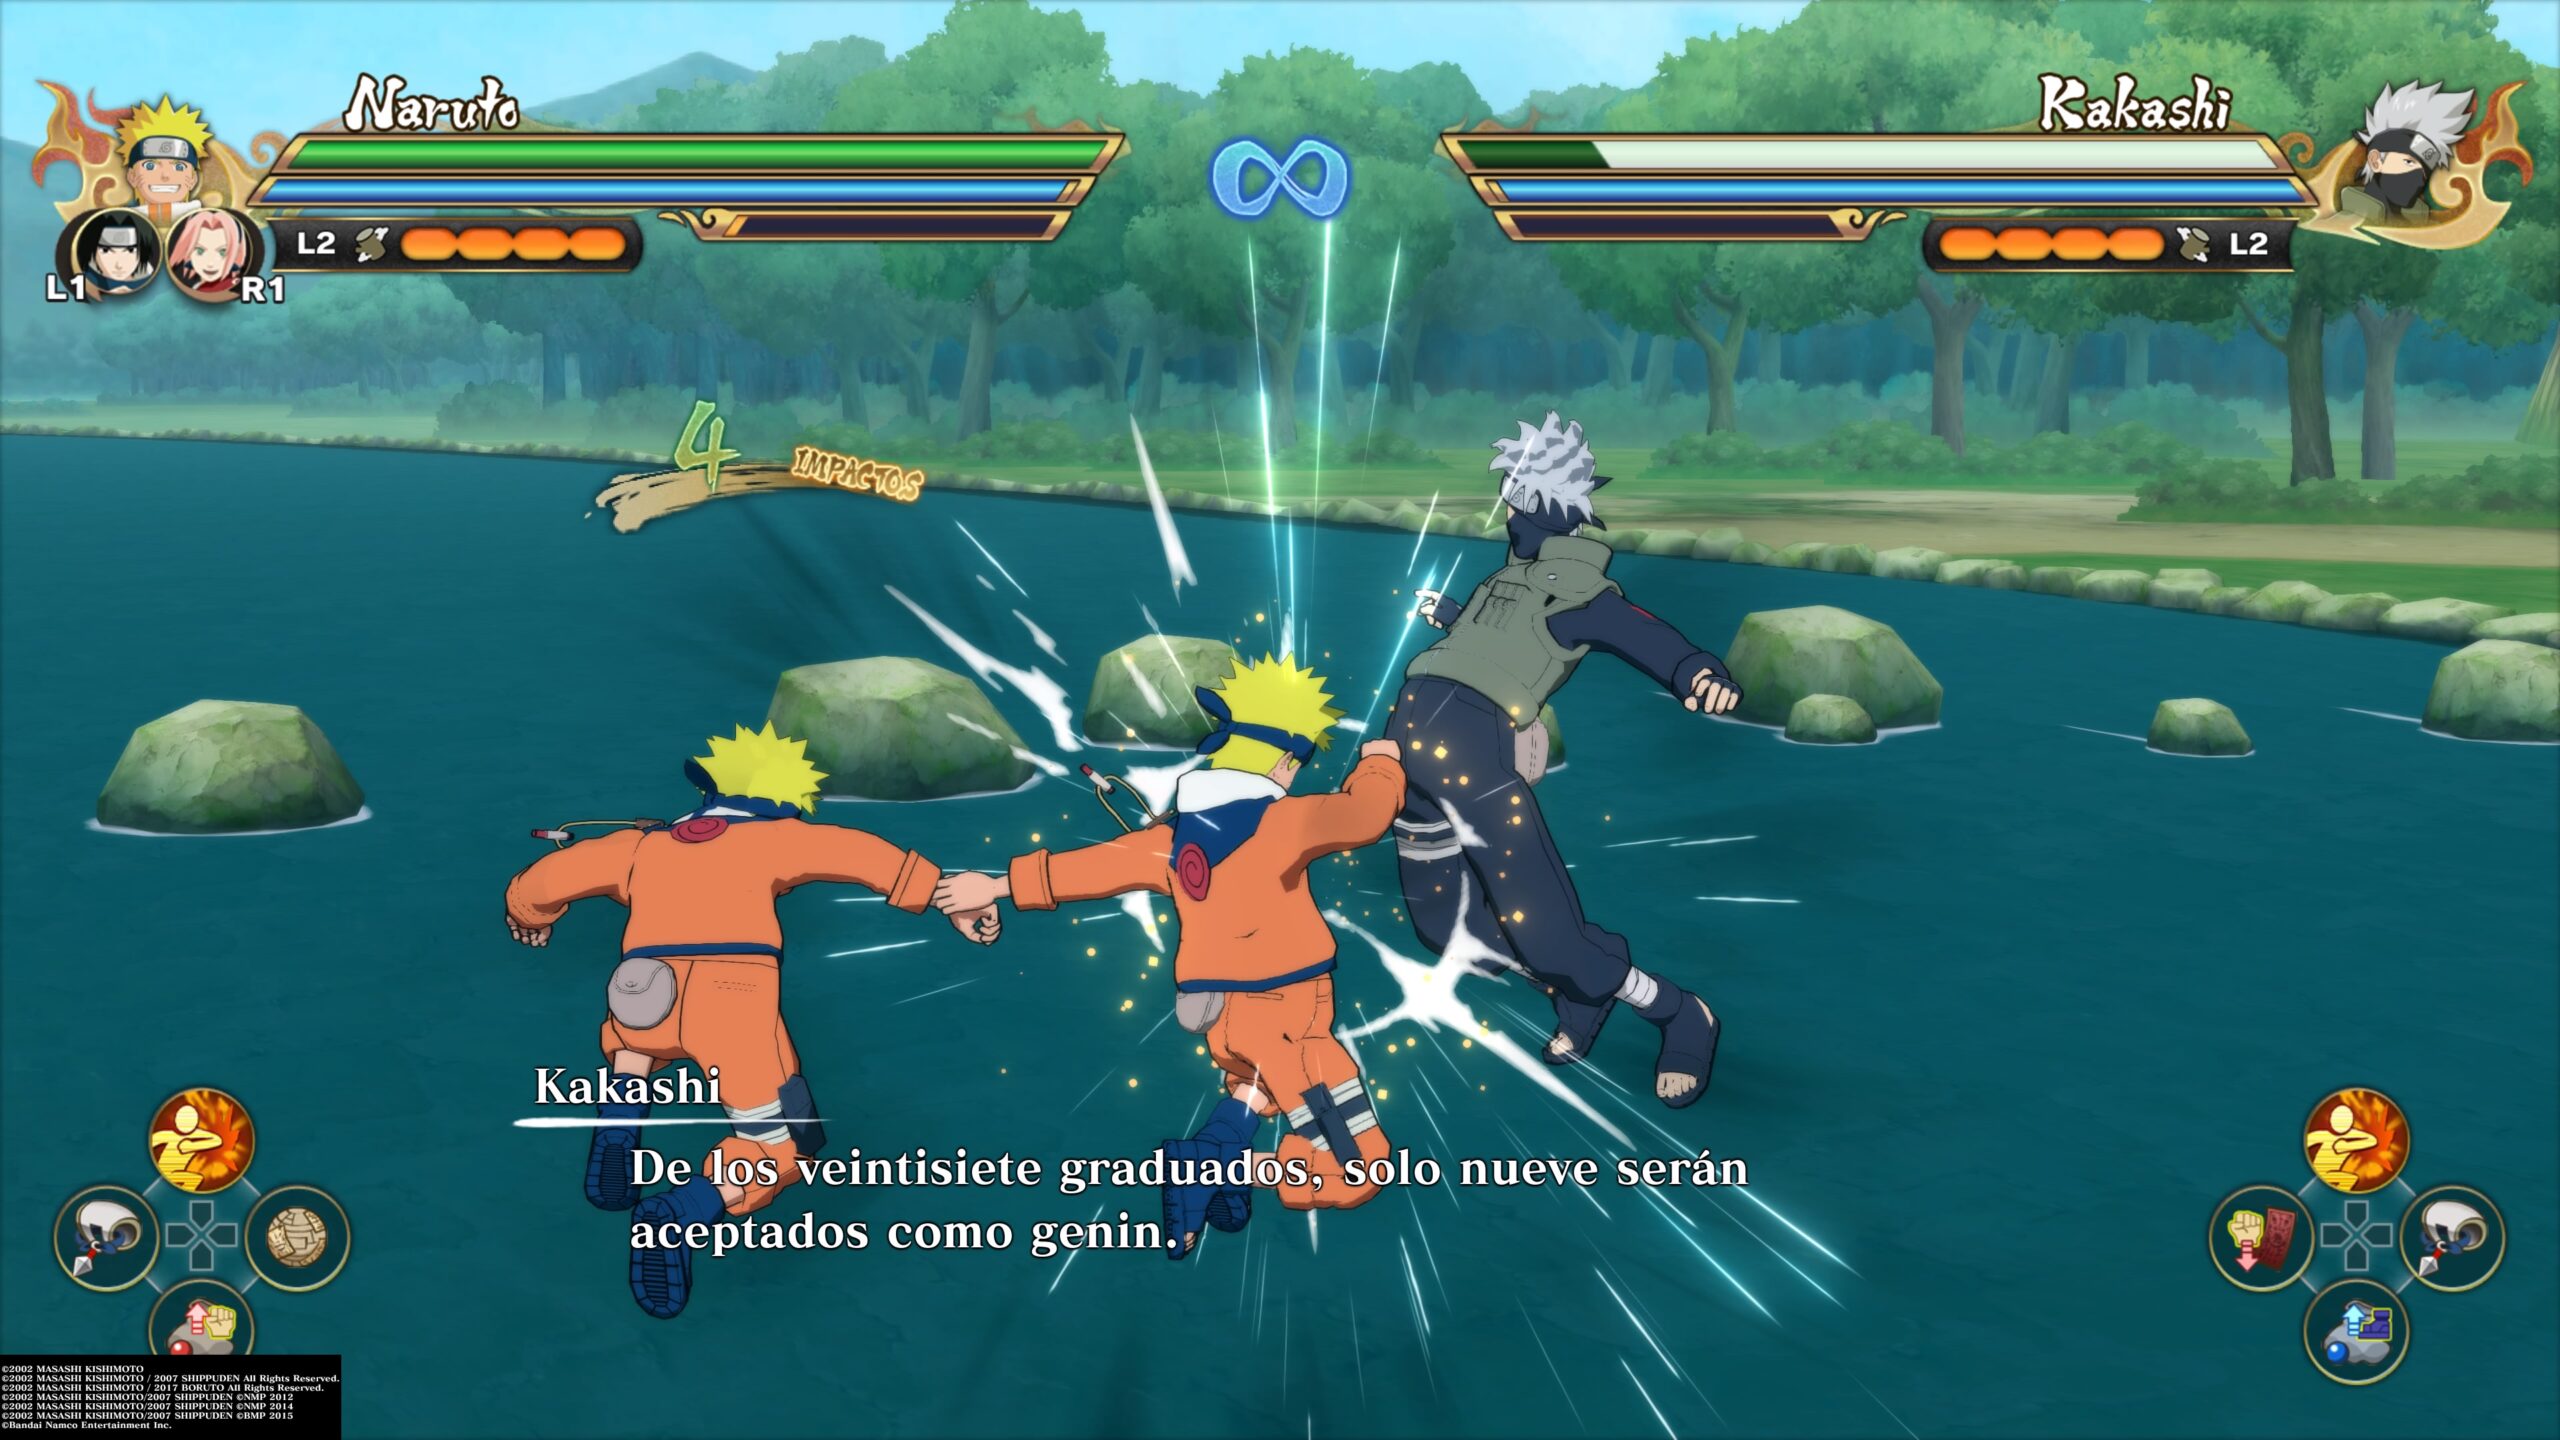 Novo Vídeo e Data de Lançamento de Naruto Shippuden: Ultimate Ninja Storm 4  - Podcast Los Chicos